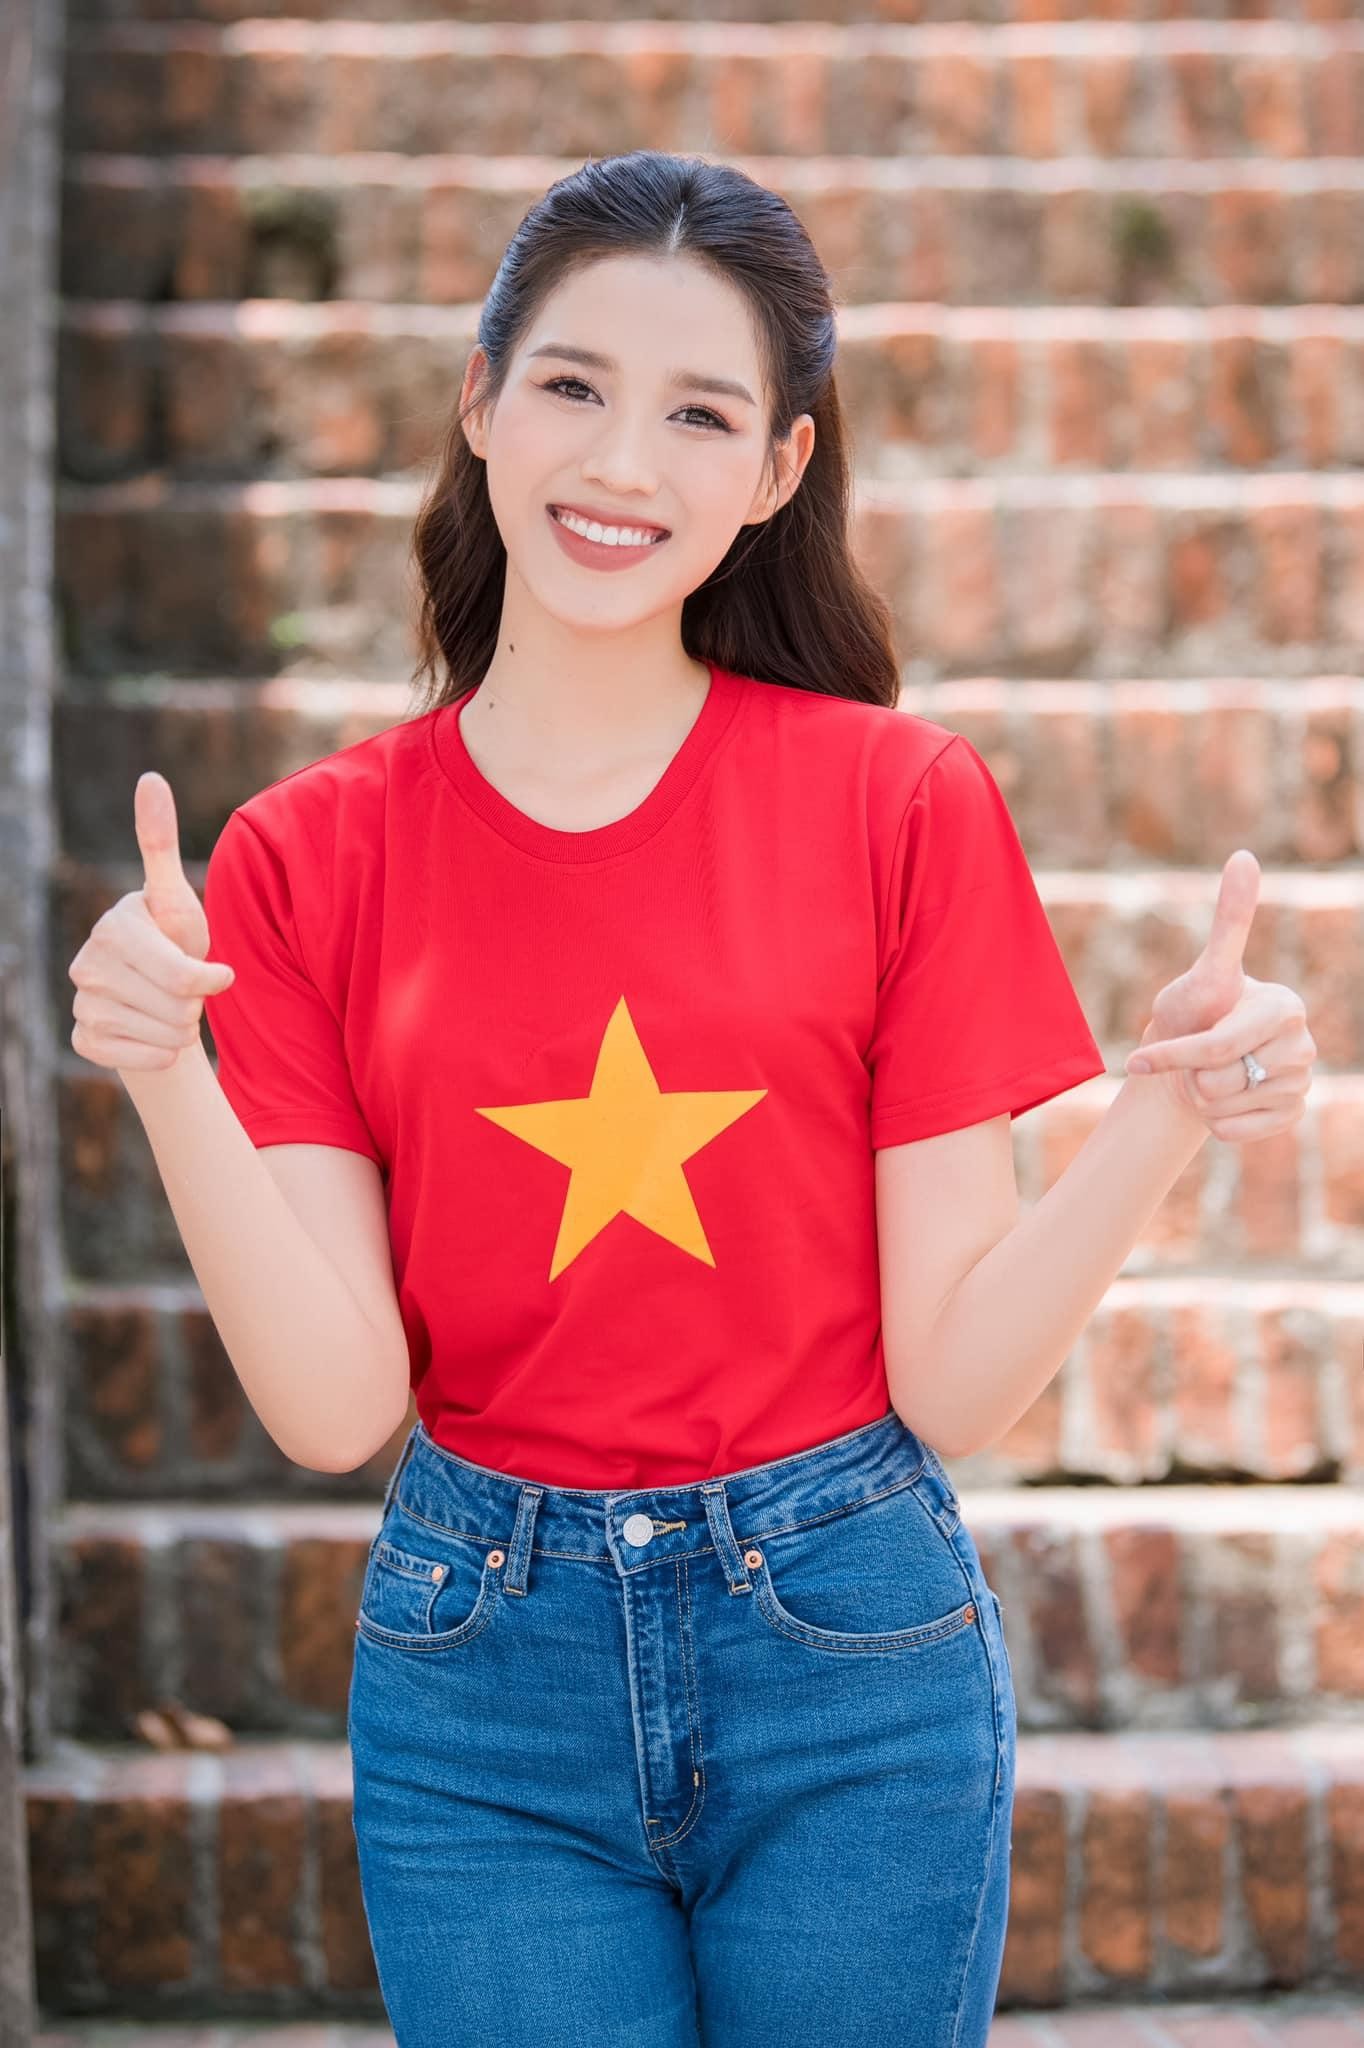 Đỗ Thị Hà, Mai Phương xinh đẹp mặc áo cờ đỏ sao vàng mừng ngày Quốc khánh - Ảnh 1.